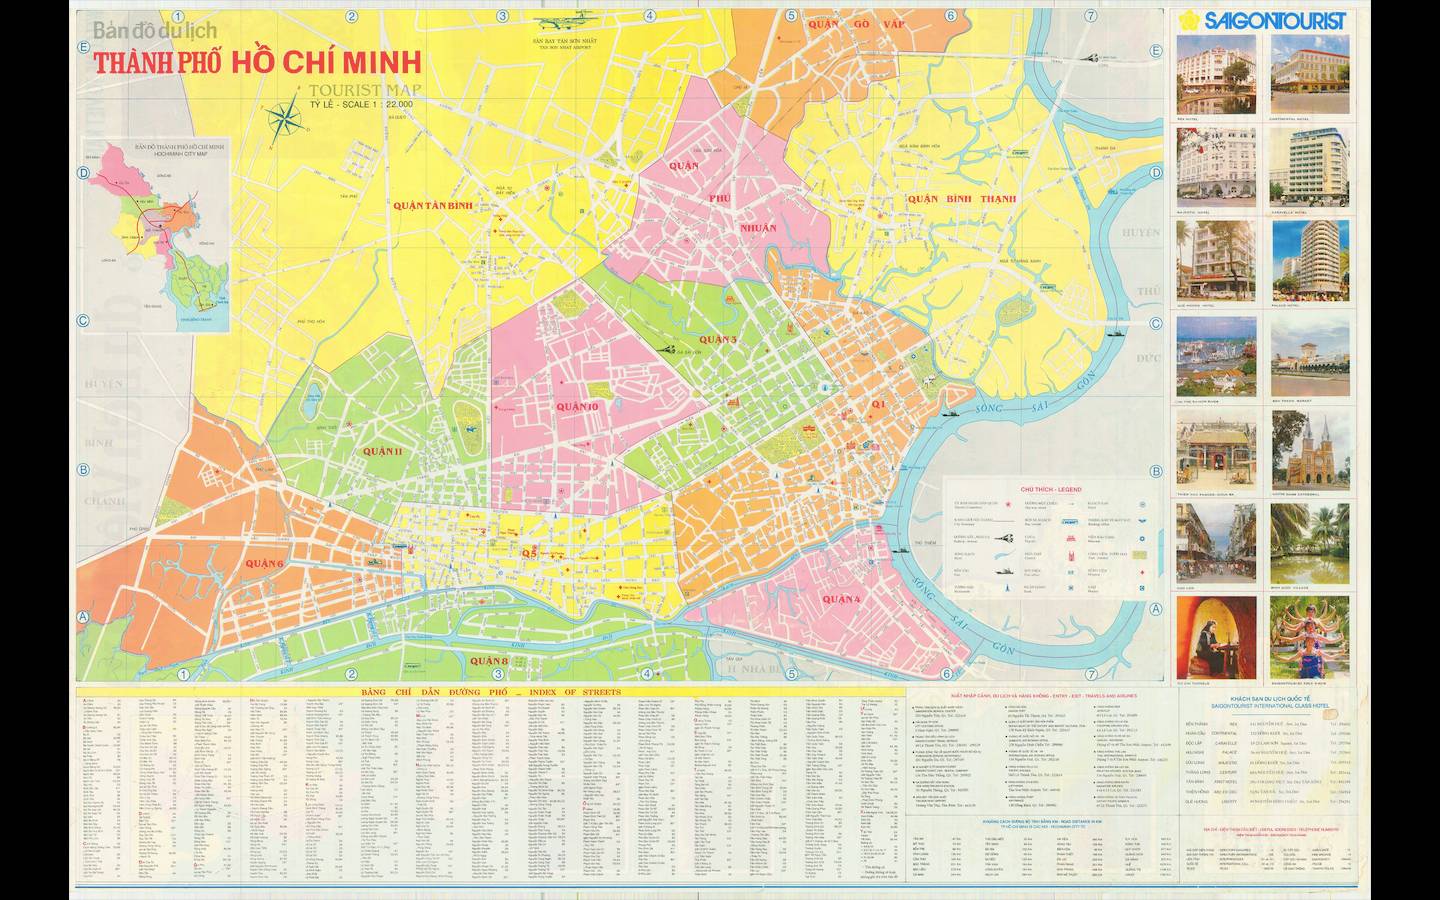 Bản đồ Thành phố Hồ Chí Minh khổ lớn 2024 sẽ giúp bạn khám phá thành phố một cách hoàn hảo và chuyên nghiệp. Với những thông tin đáng tin cậy và cập nhật mới nhất về giao thông, địa điểm du lịch và những món ăn ngon, bản đồ của chúng tôi là công cụ không thể thiếu cho những ai muốn khám phá TP HCM.